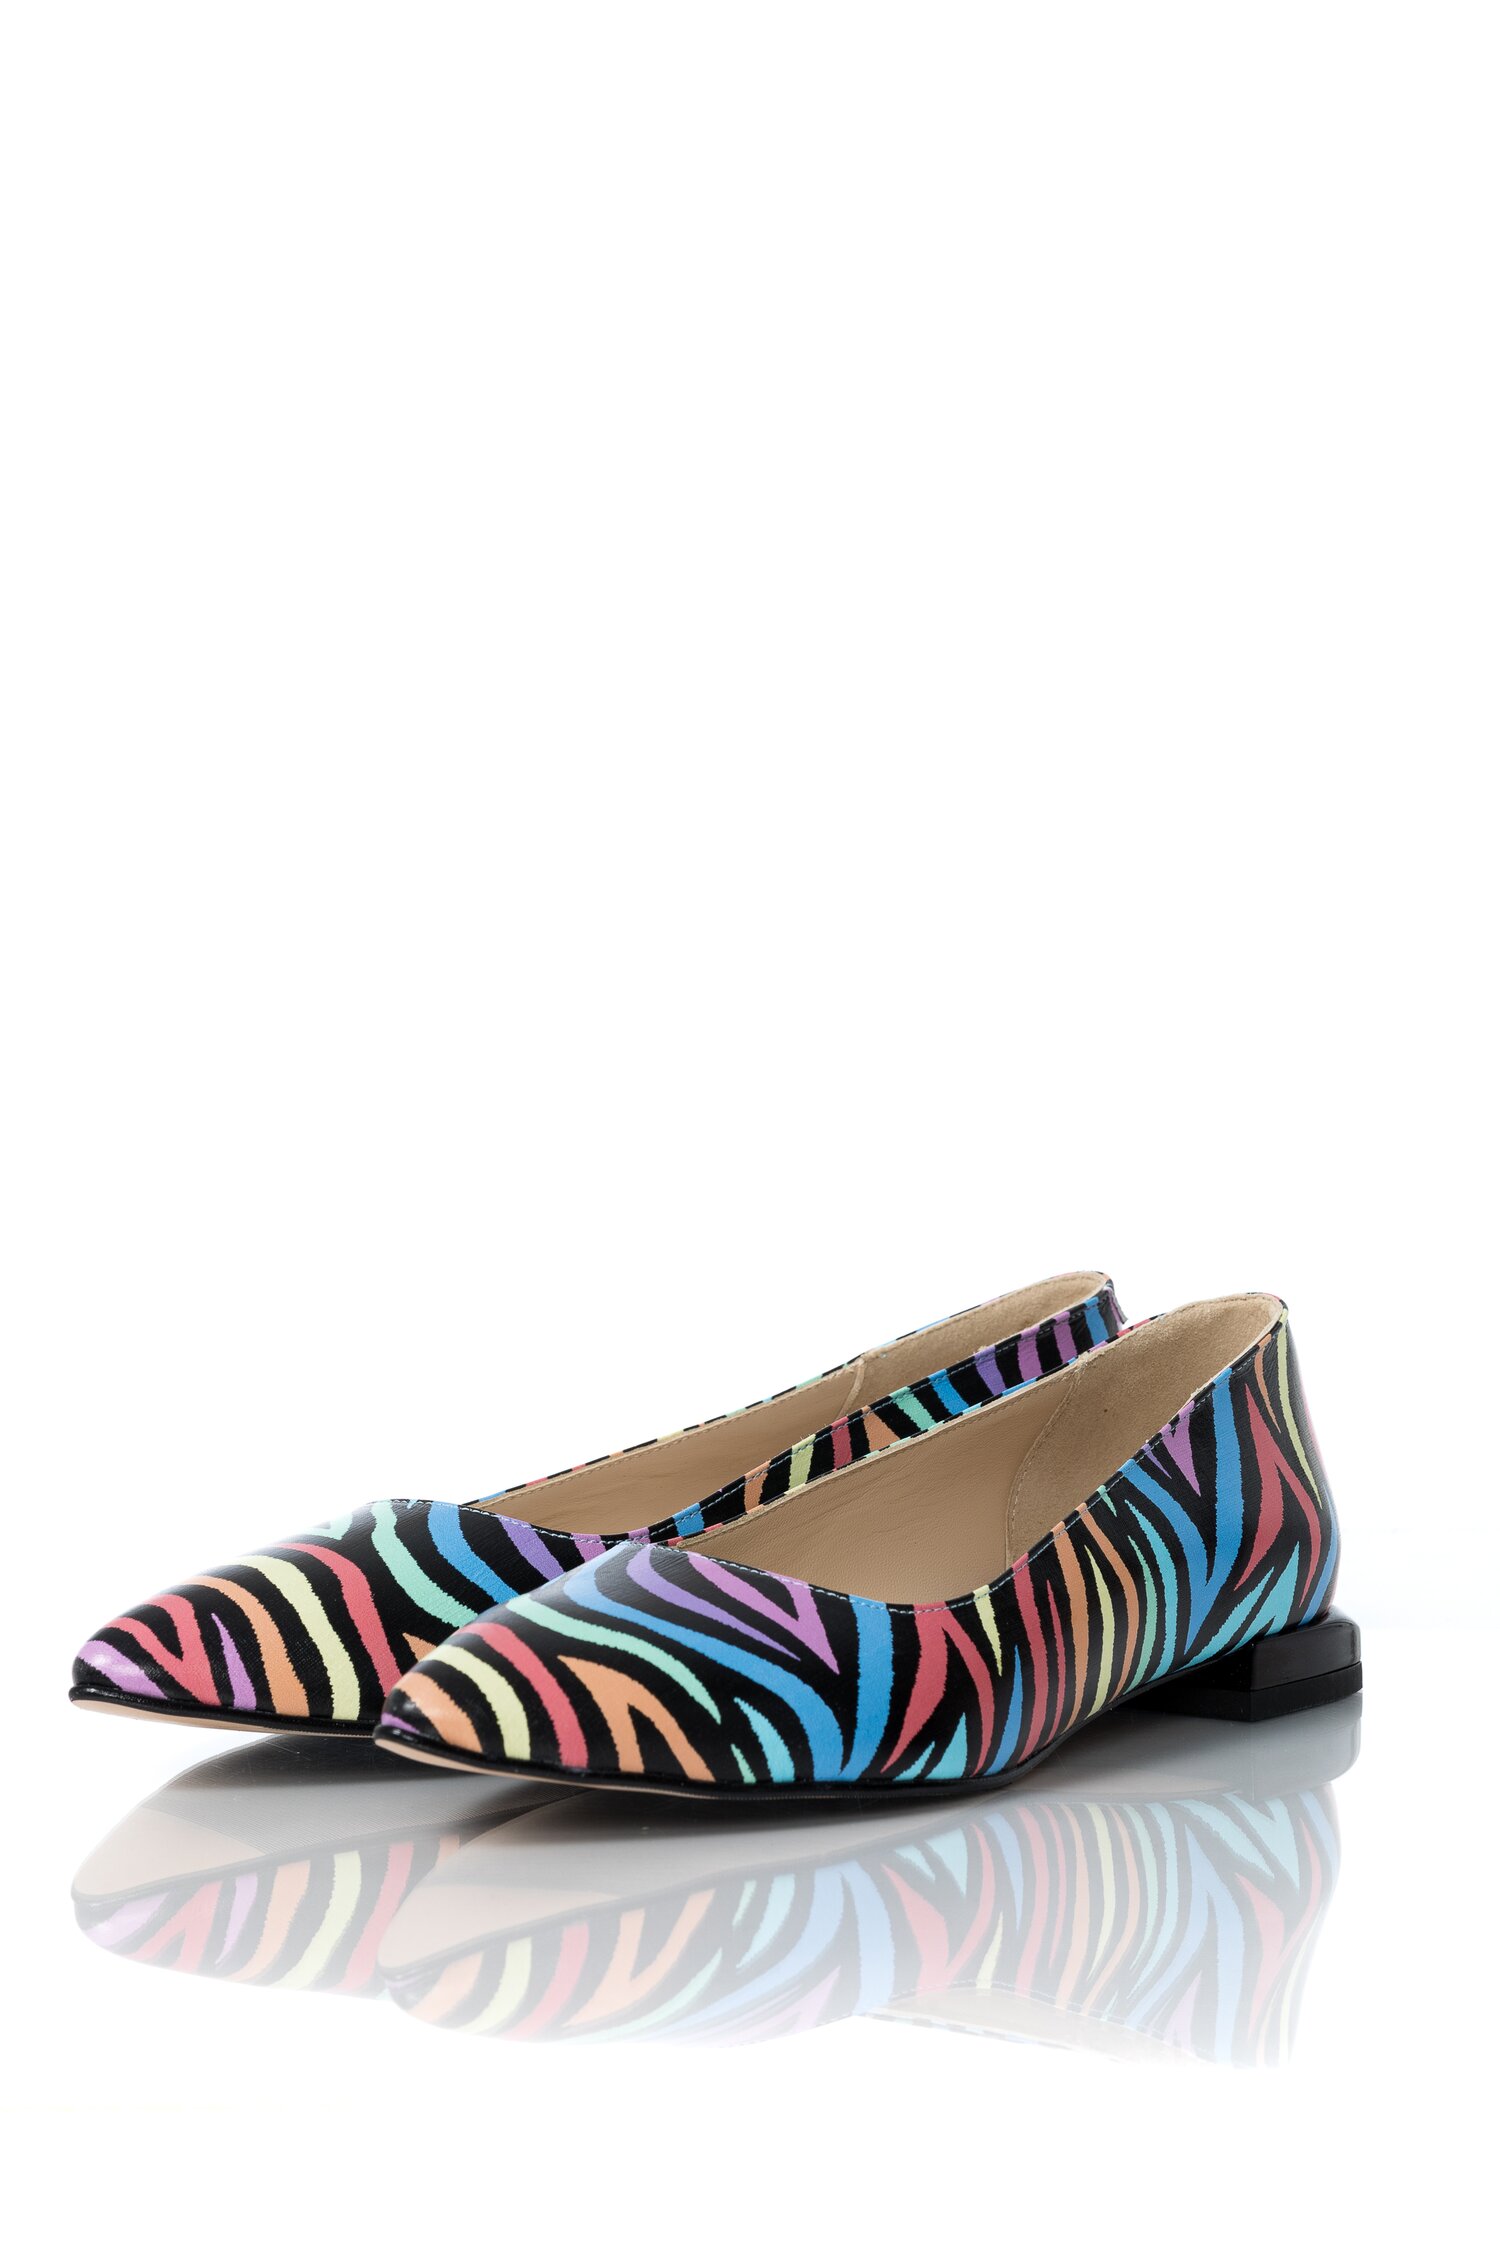 Pantofi Anda fara toc cu imprimeu multicolor dyfashion.ro imagine megaplaza.ro